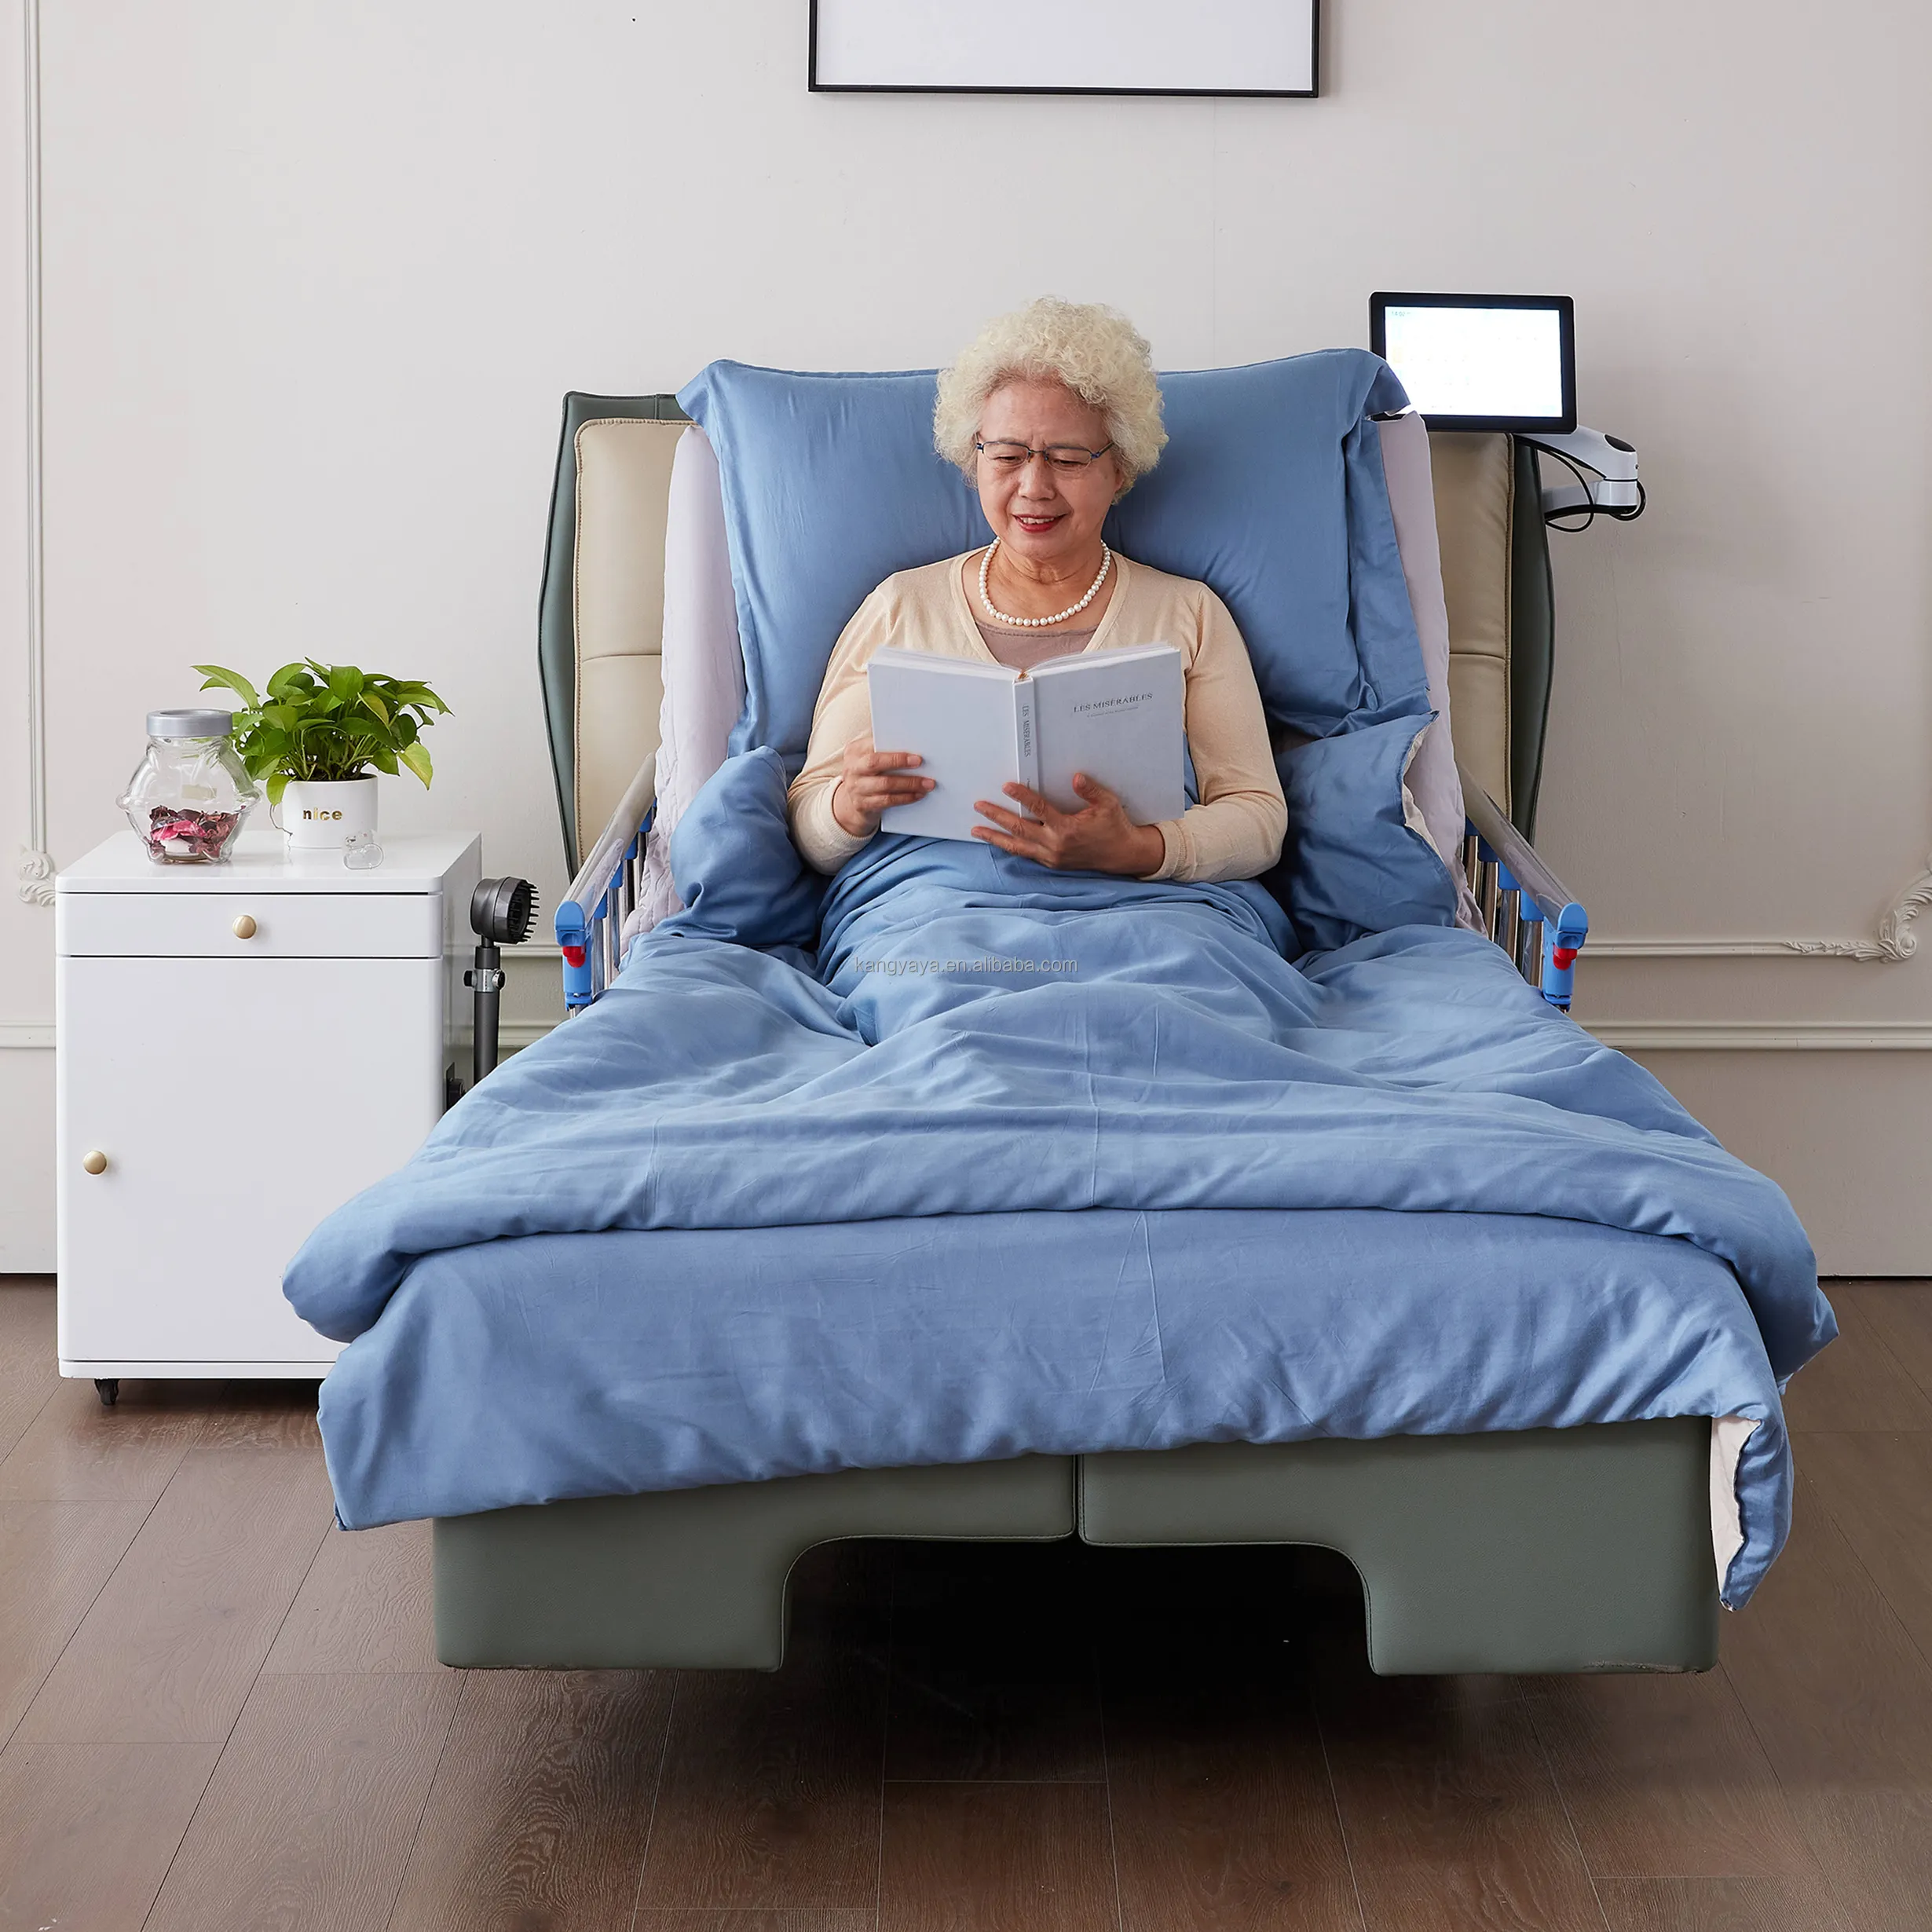 Простая в эксплуатации умная кровать для ухода с функцией свободного управления углом подъема спины для пожилых людей для использования дома